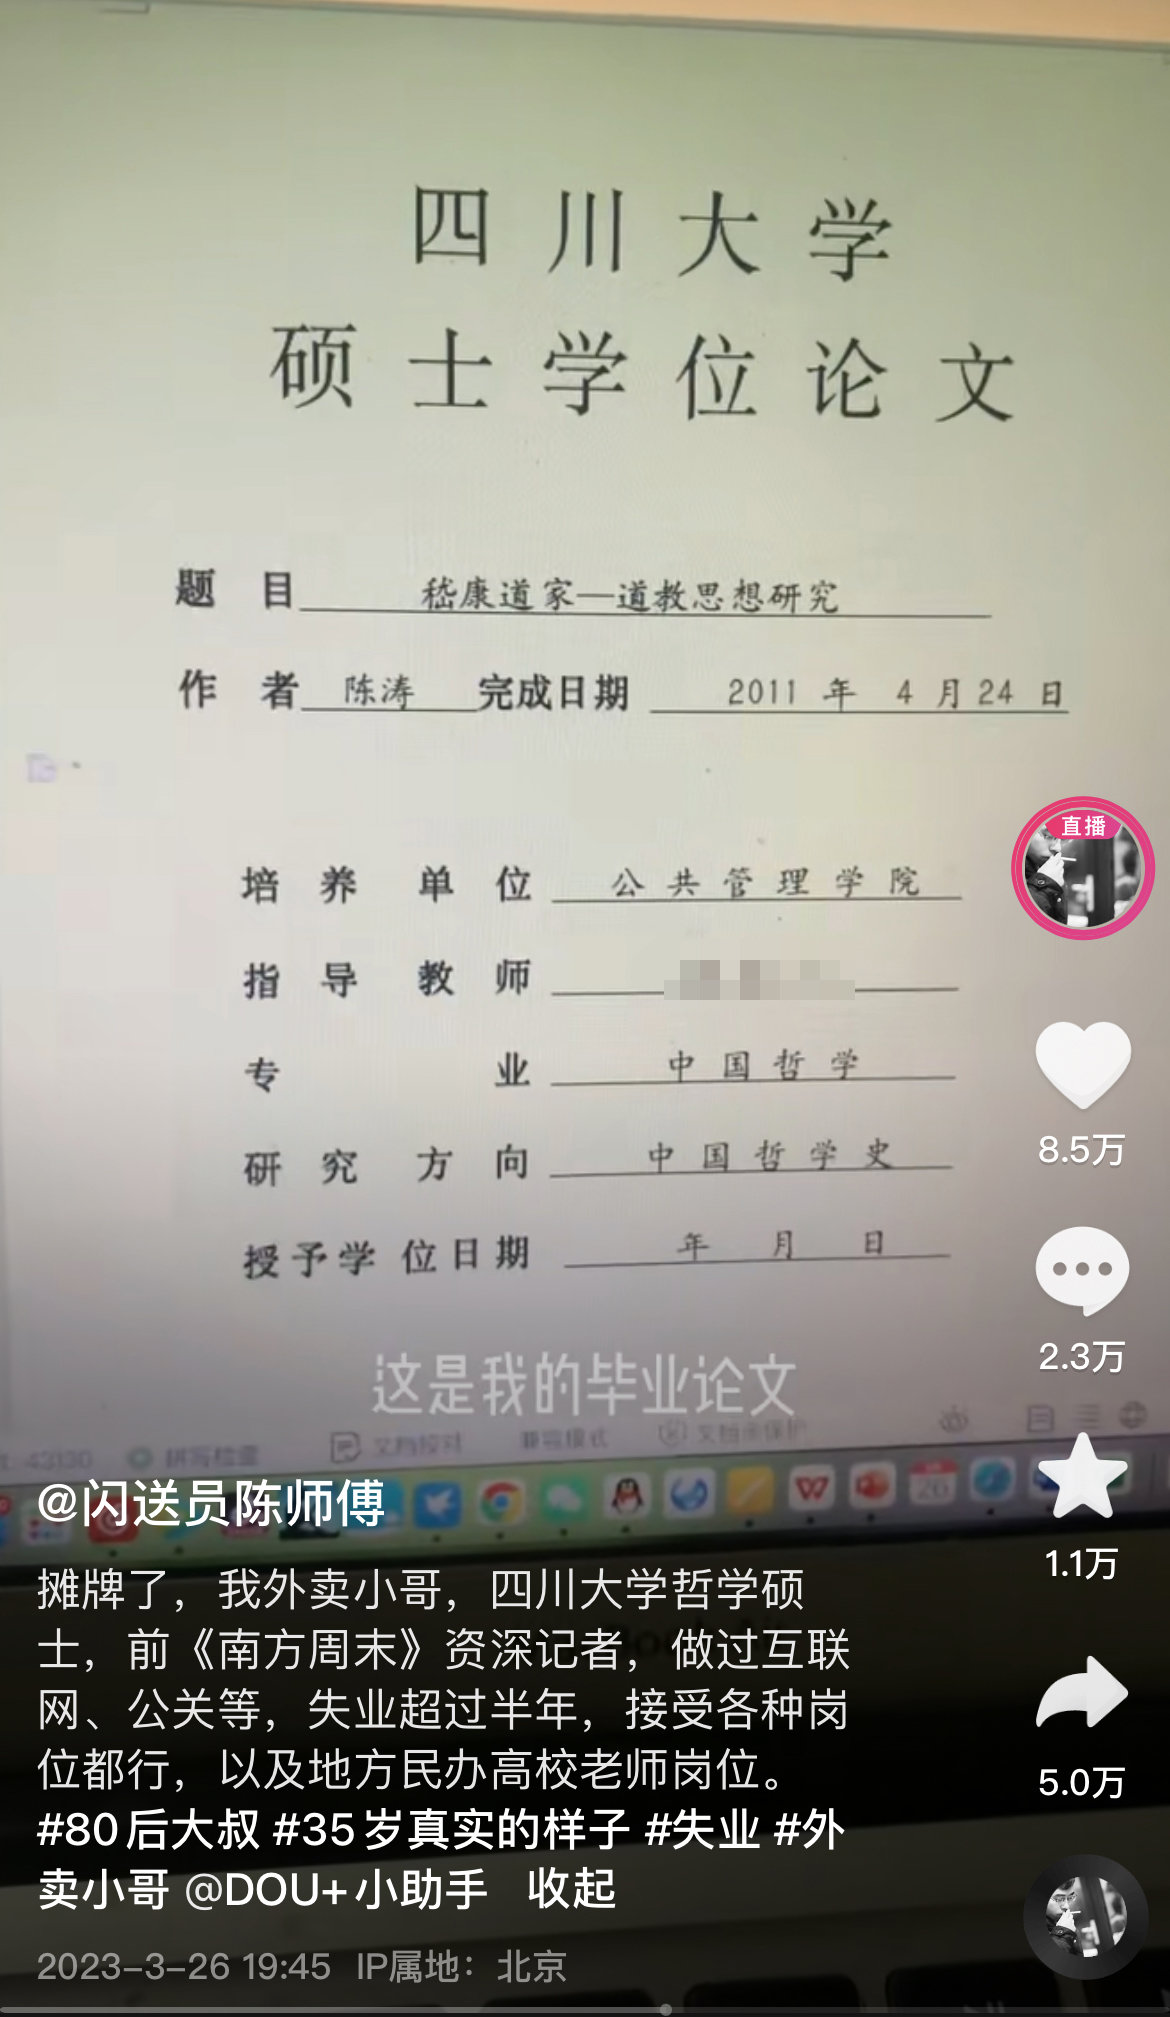 陈涛在抖音上晒出硕士论文封面。视频截图